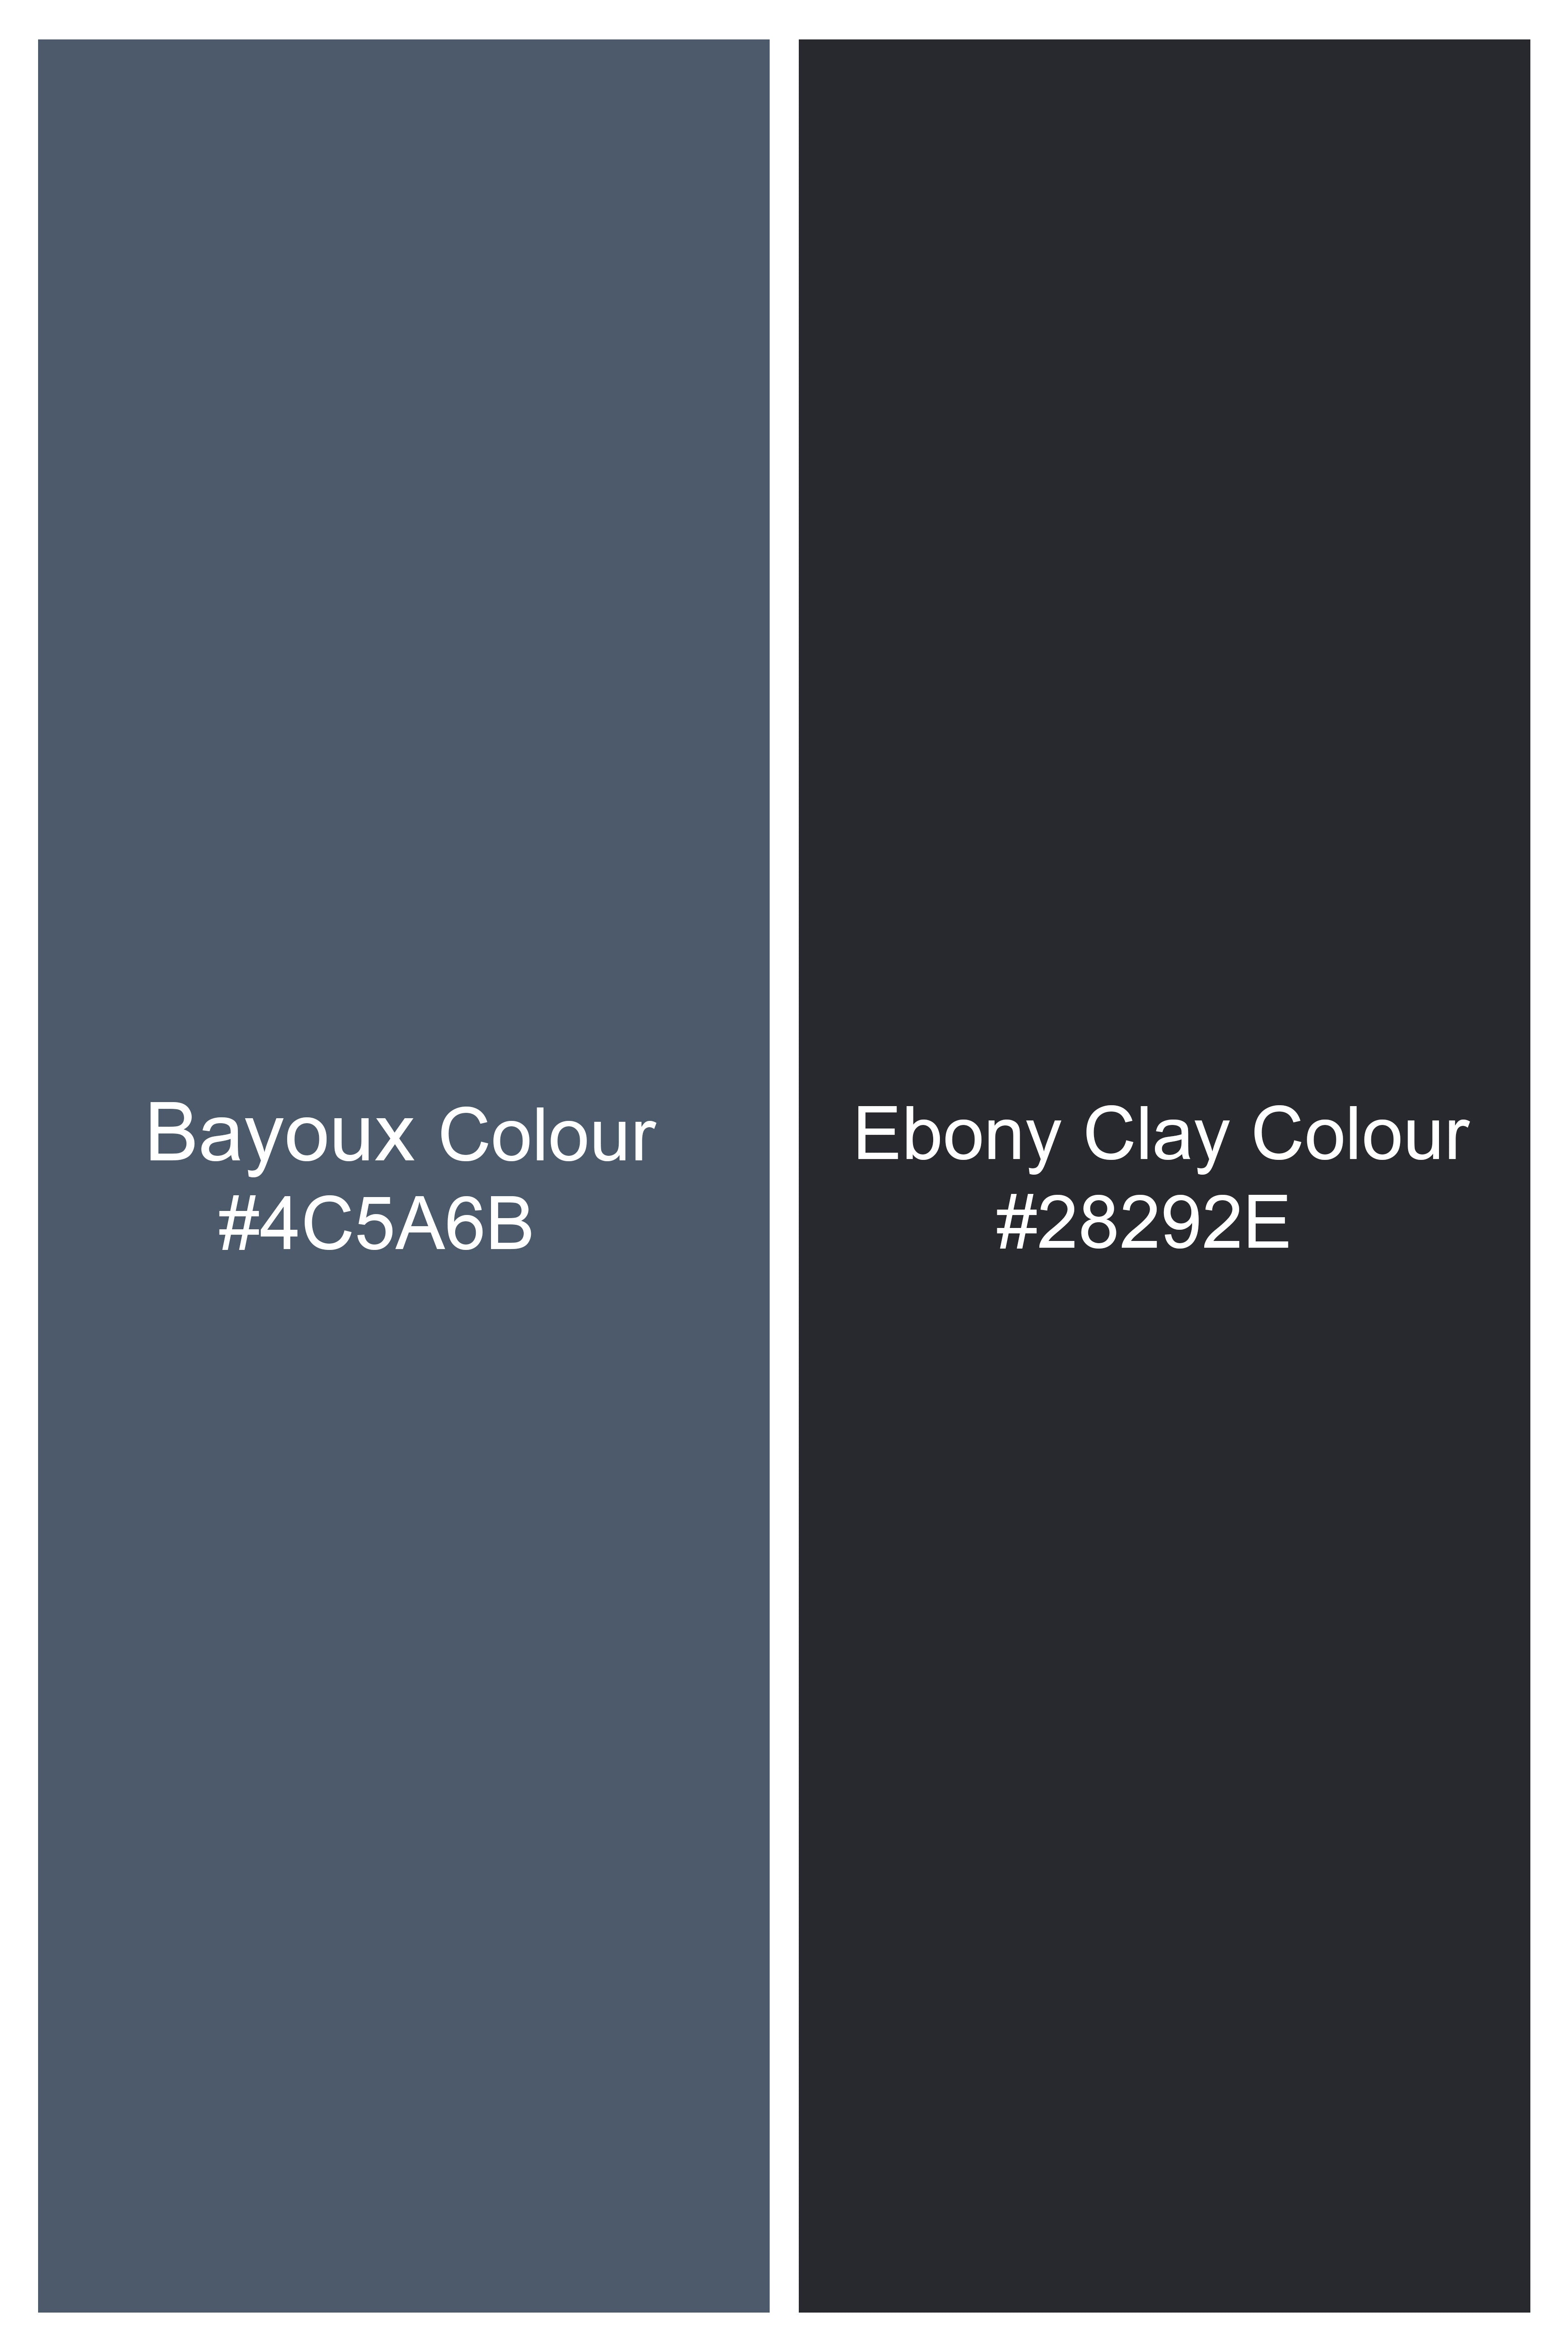 Bayoux Gray Plaid Wool Rich Waistcoat V2906-36, V2906-38, V2906-40, V2906-42, V2906-44, V2906-46, V2906-48, V2906-50, V2906-06, V2906-54, V2906-56, V2906-58, V2906-60